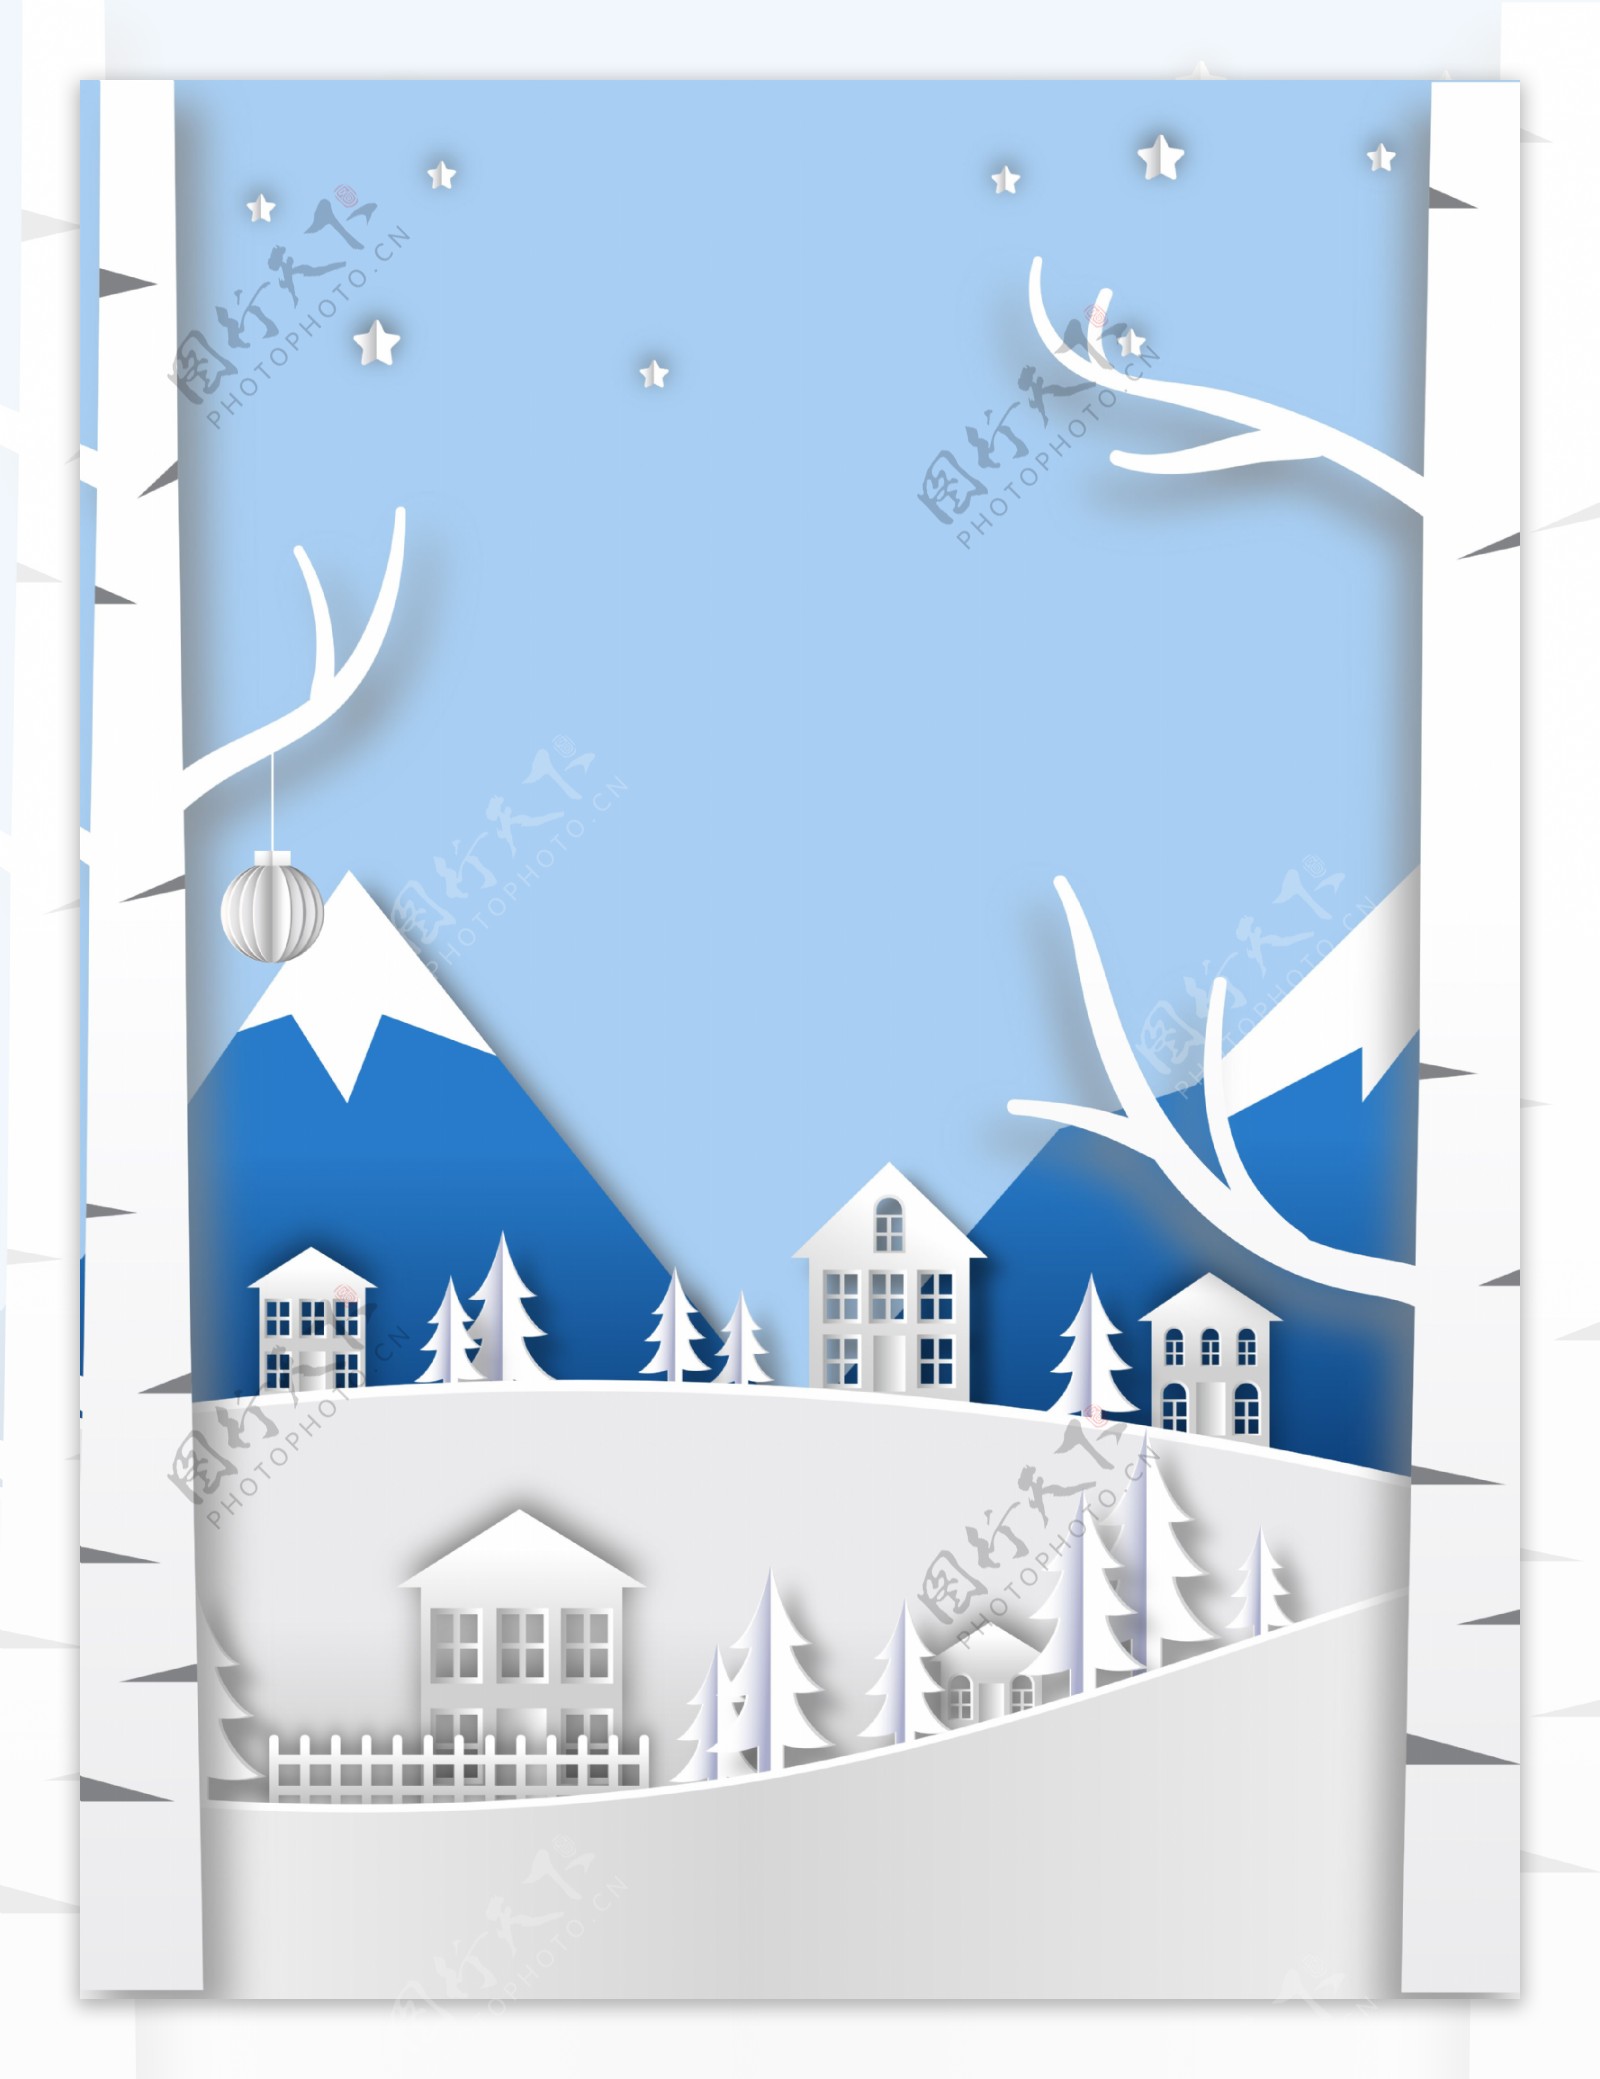 手绘建筑雪地背景